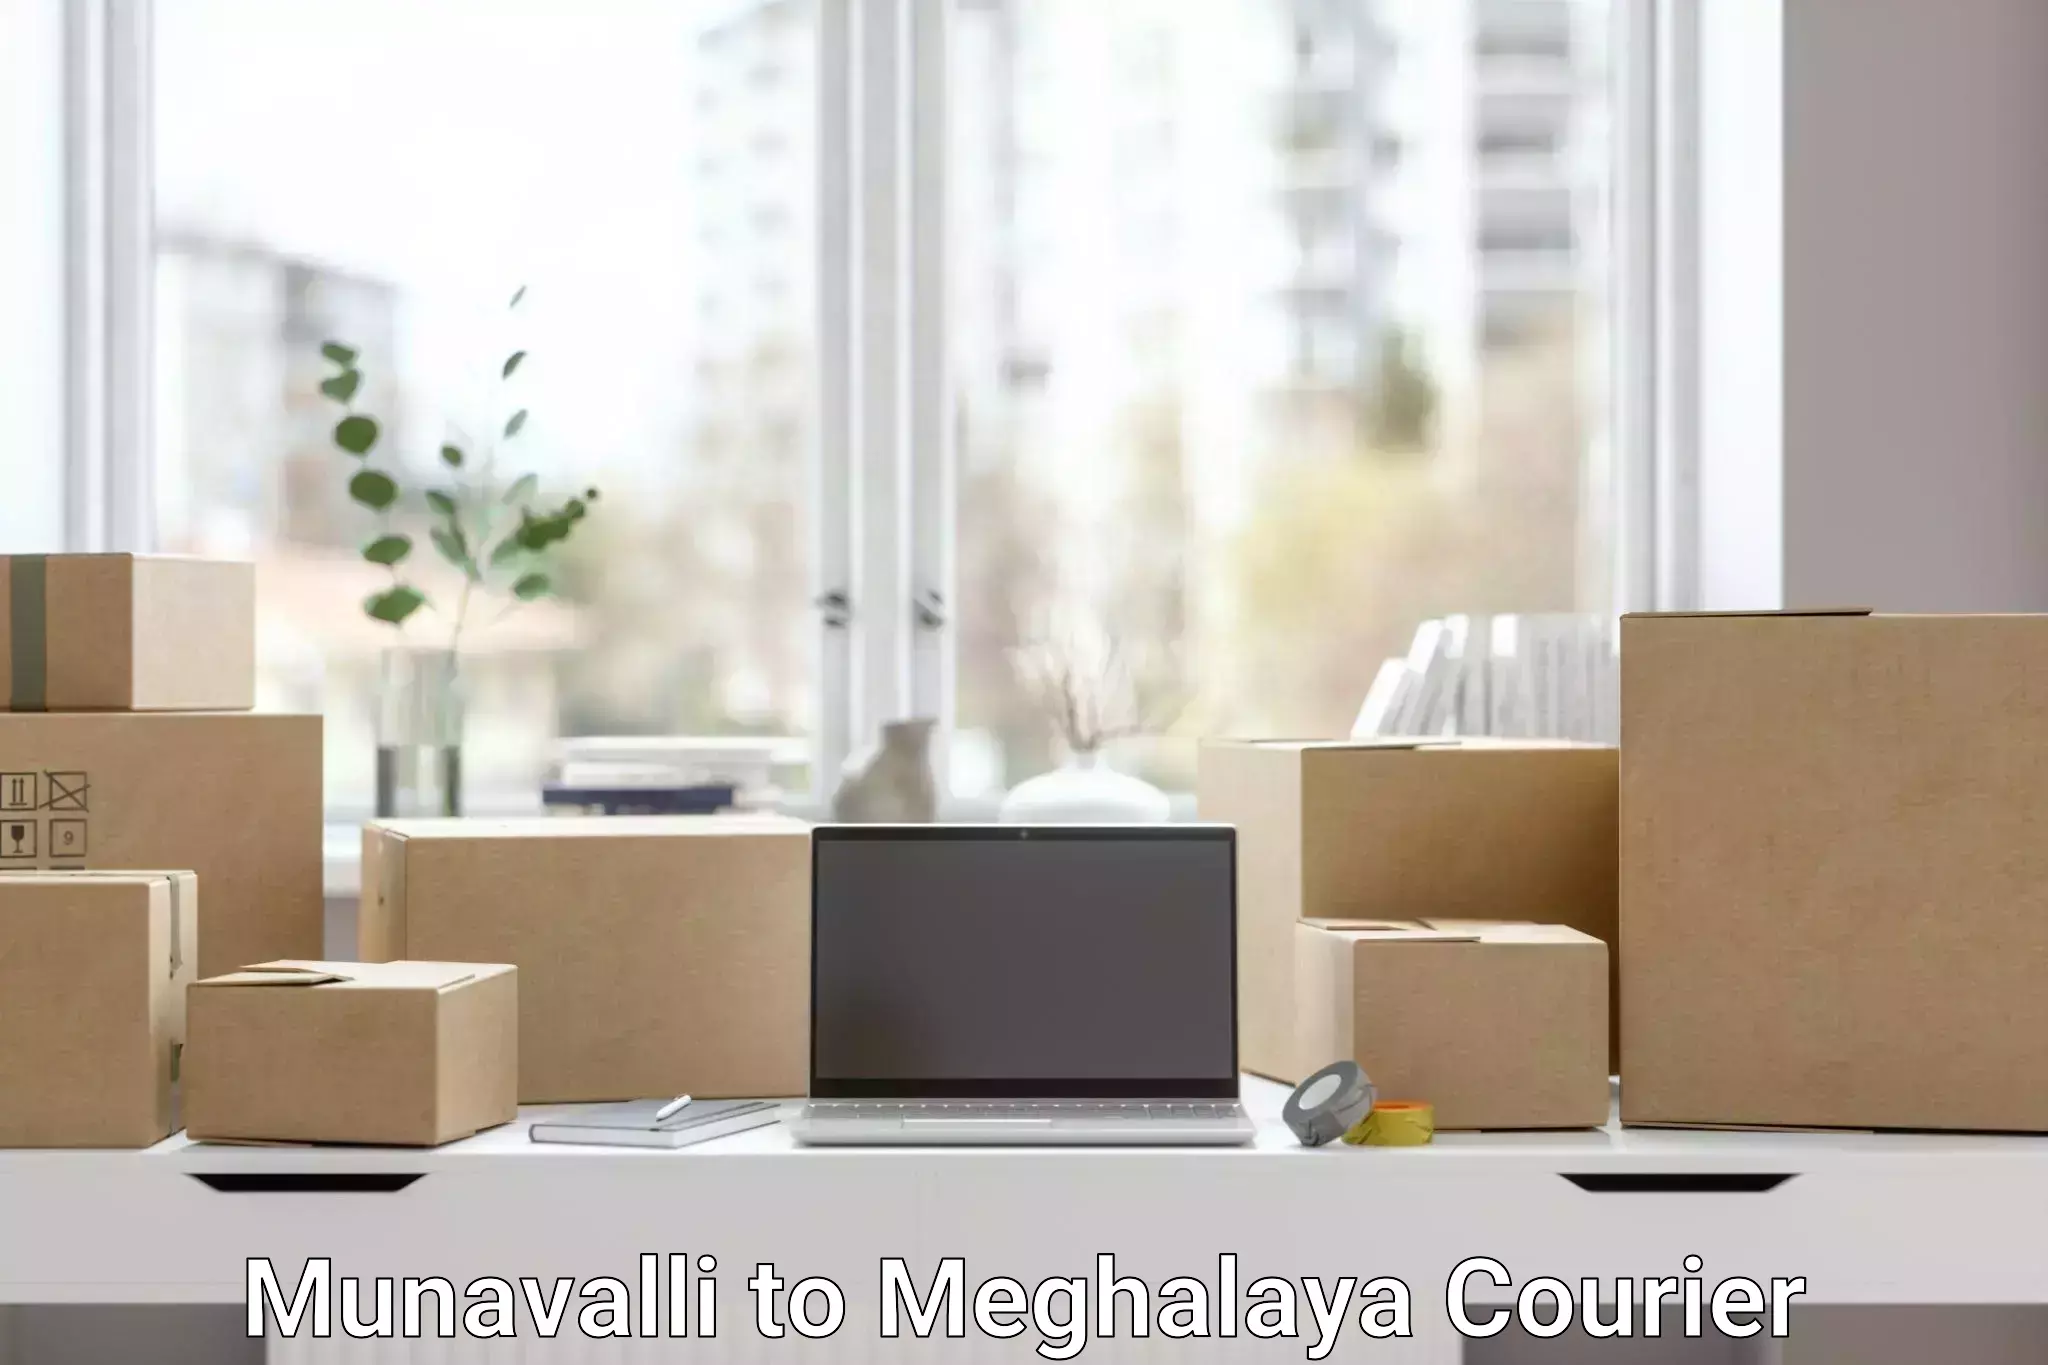 International courier networks Munavalli to Williamnagar